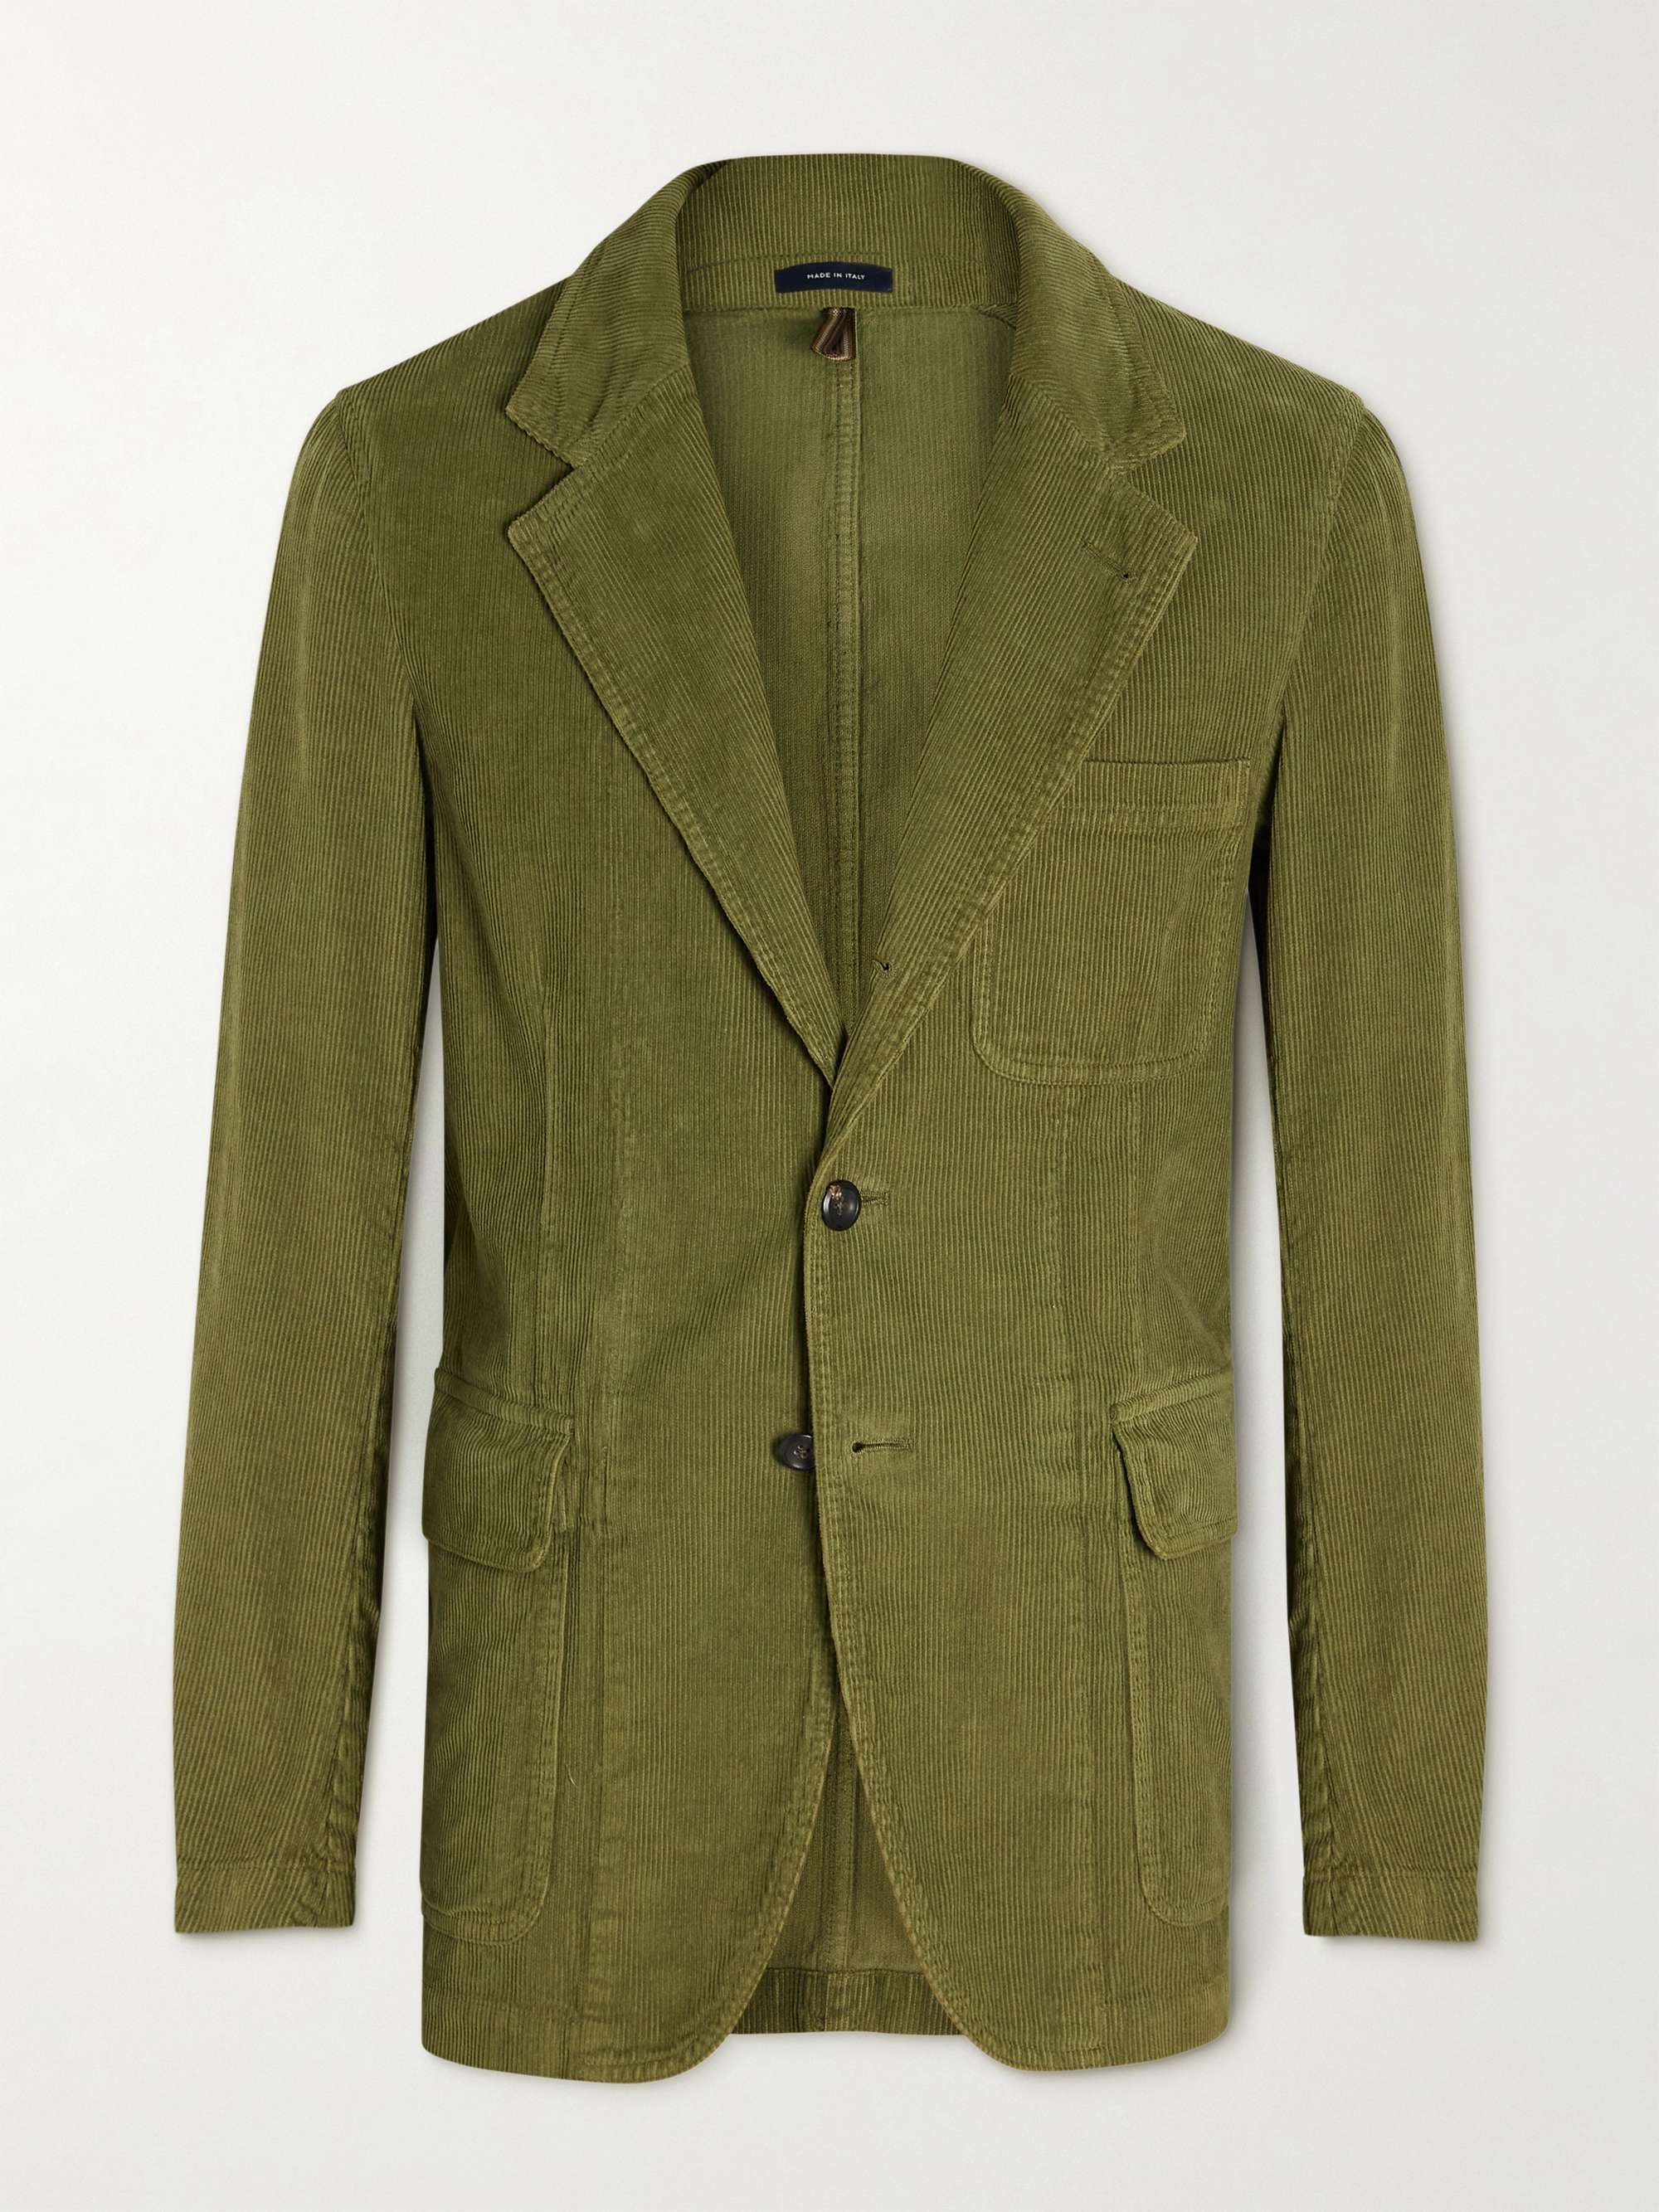 DRAKE'S Unstructured Cotton-Corduroy Suit Jacket